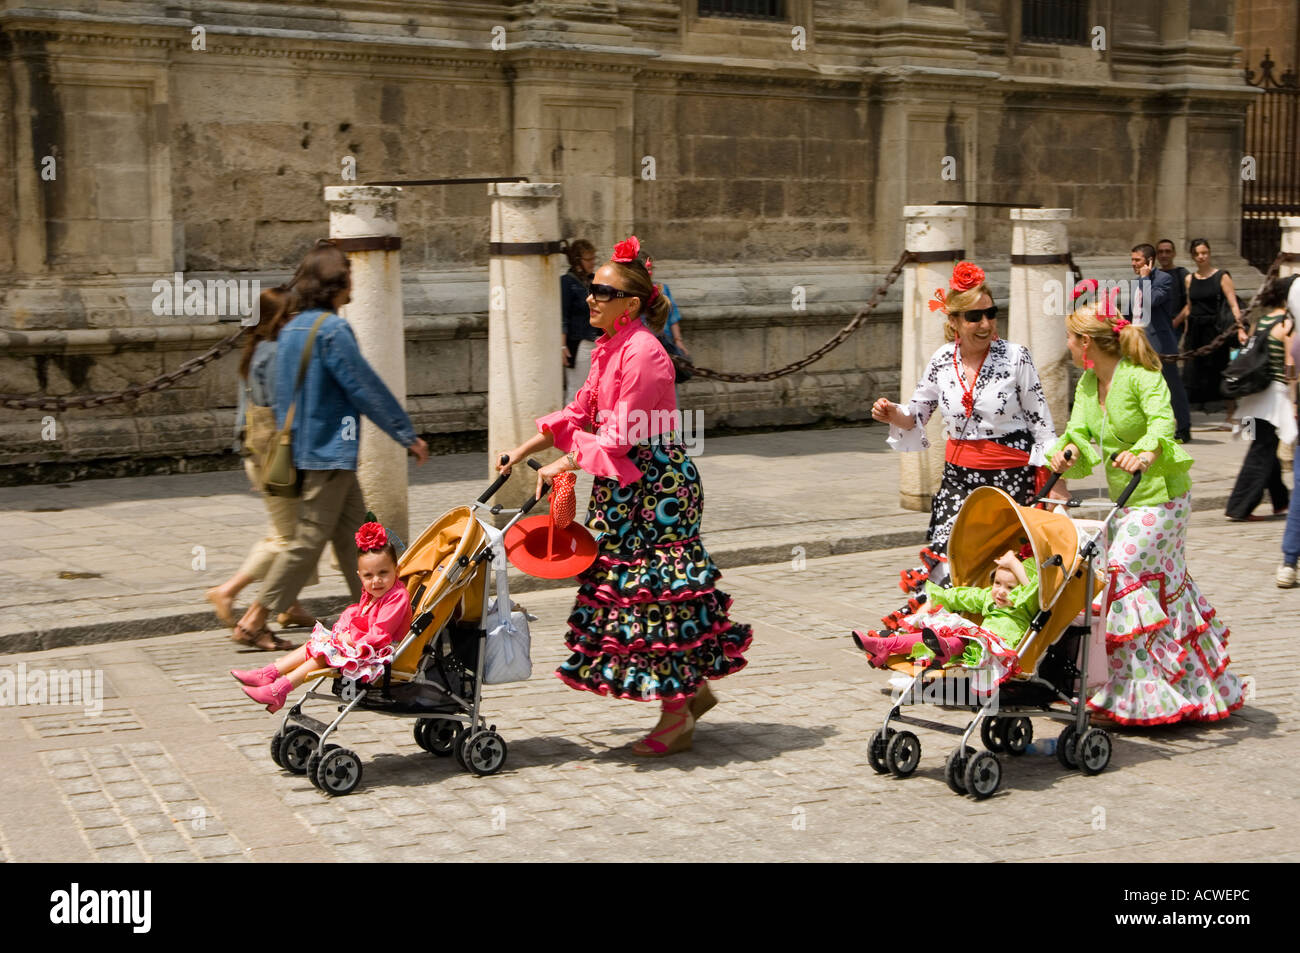 Frauen und Kinder in traditioneller Kleidung außerhalb der großen gotischen  Kathedrale von Sevilla, Andalusien, Spanien, während der Feria  Stockfotografie - Alamy